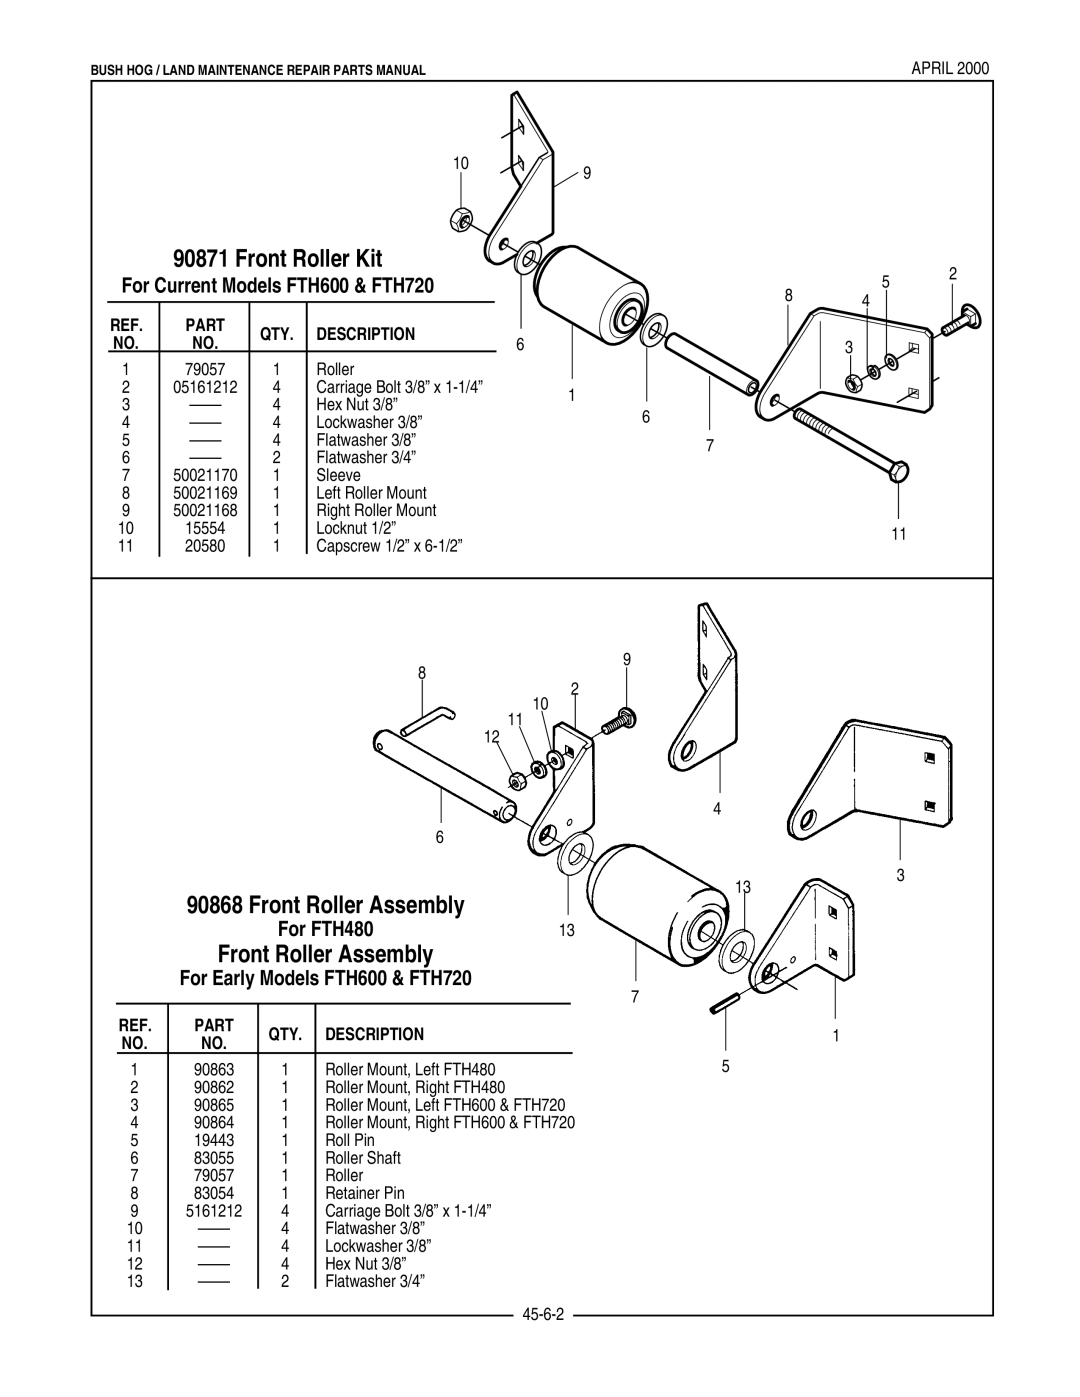 Bush Hog FTH 480 manual Front Roller Kit, Front Roller Assembly, For Current Models FTH600 & FTH720, Part, Description 